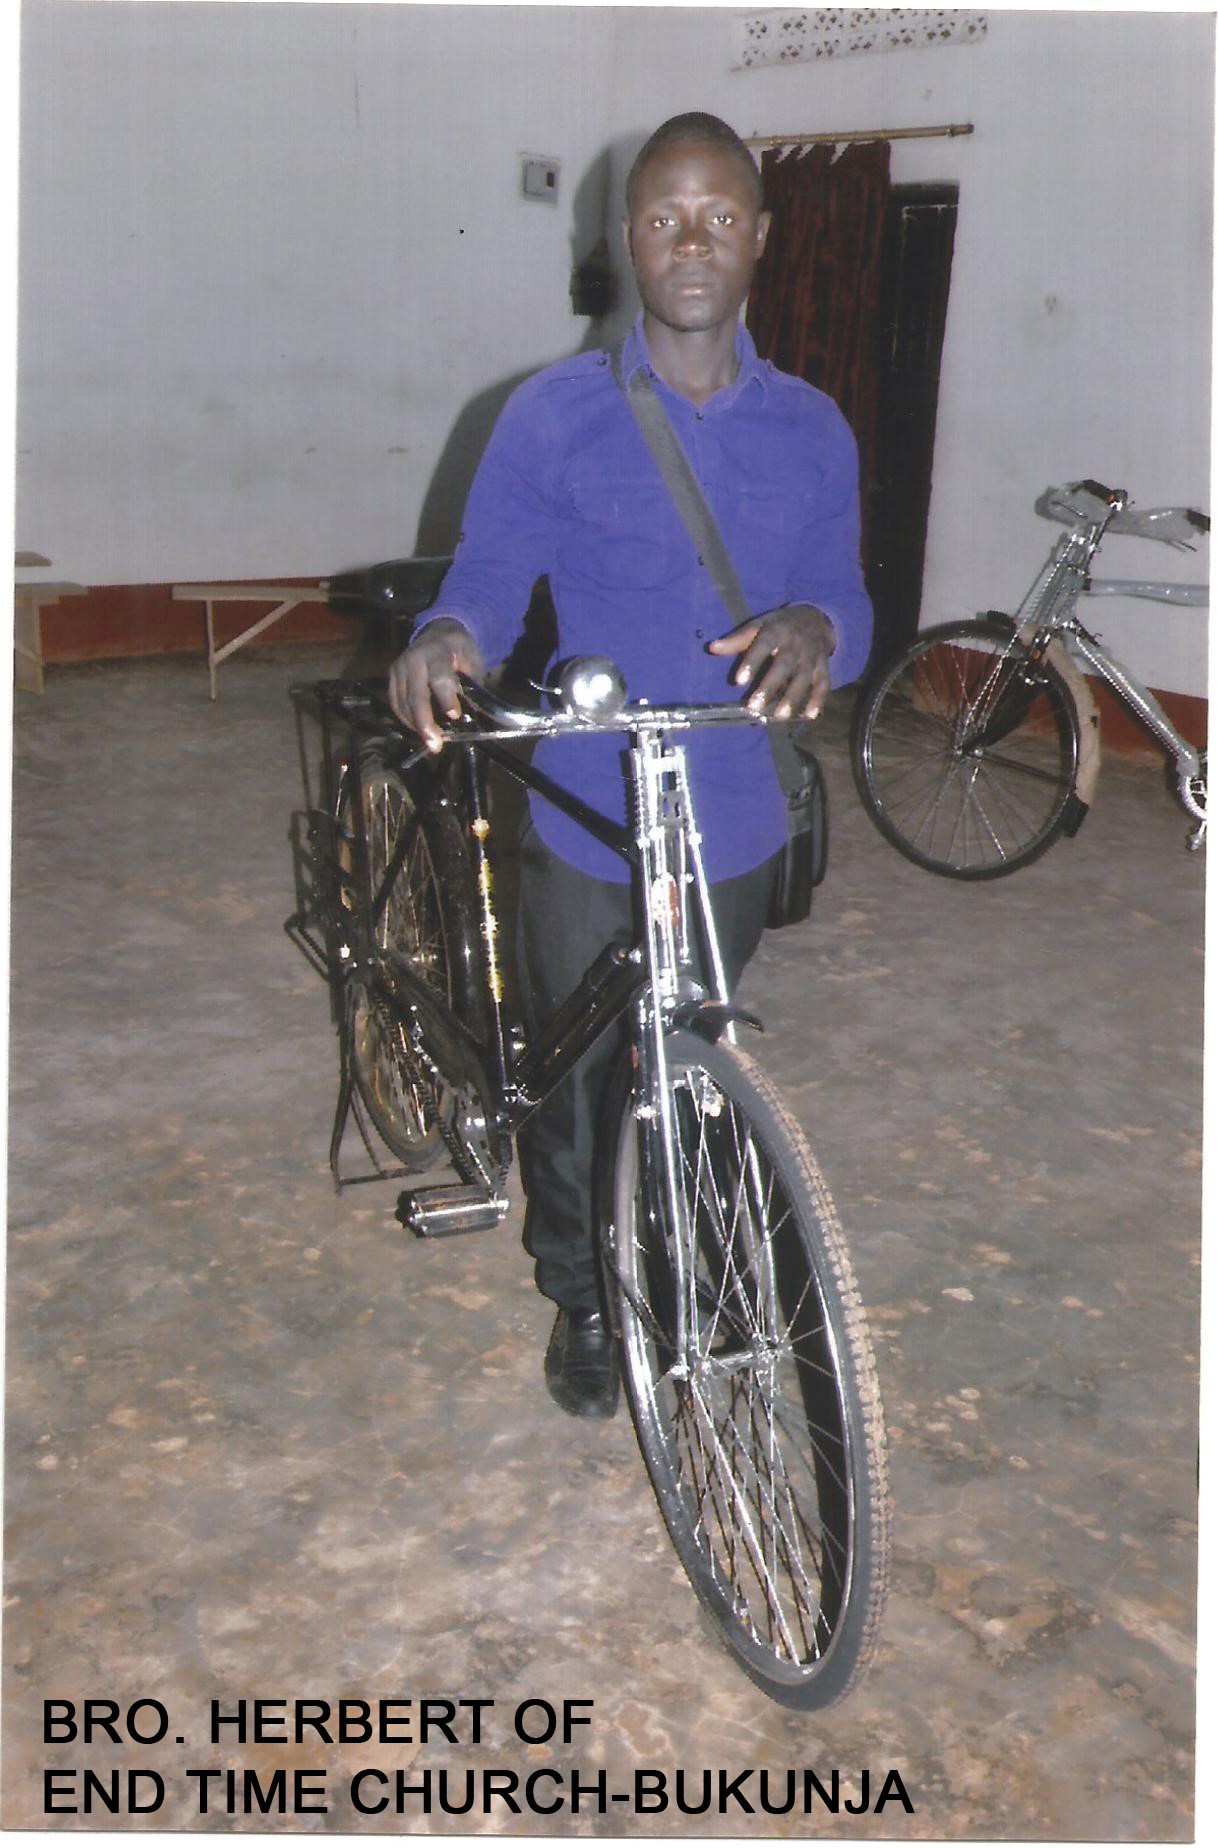 Bro. Herbert's bicycle